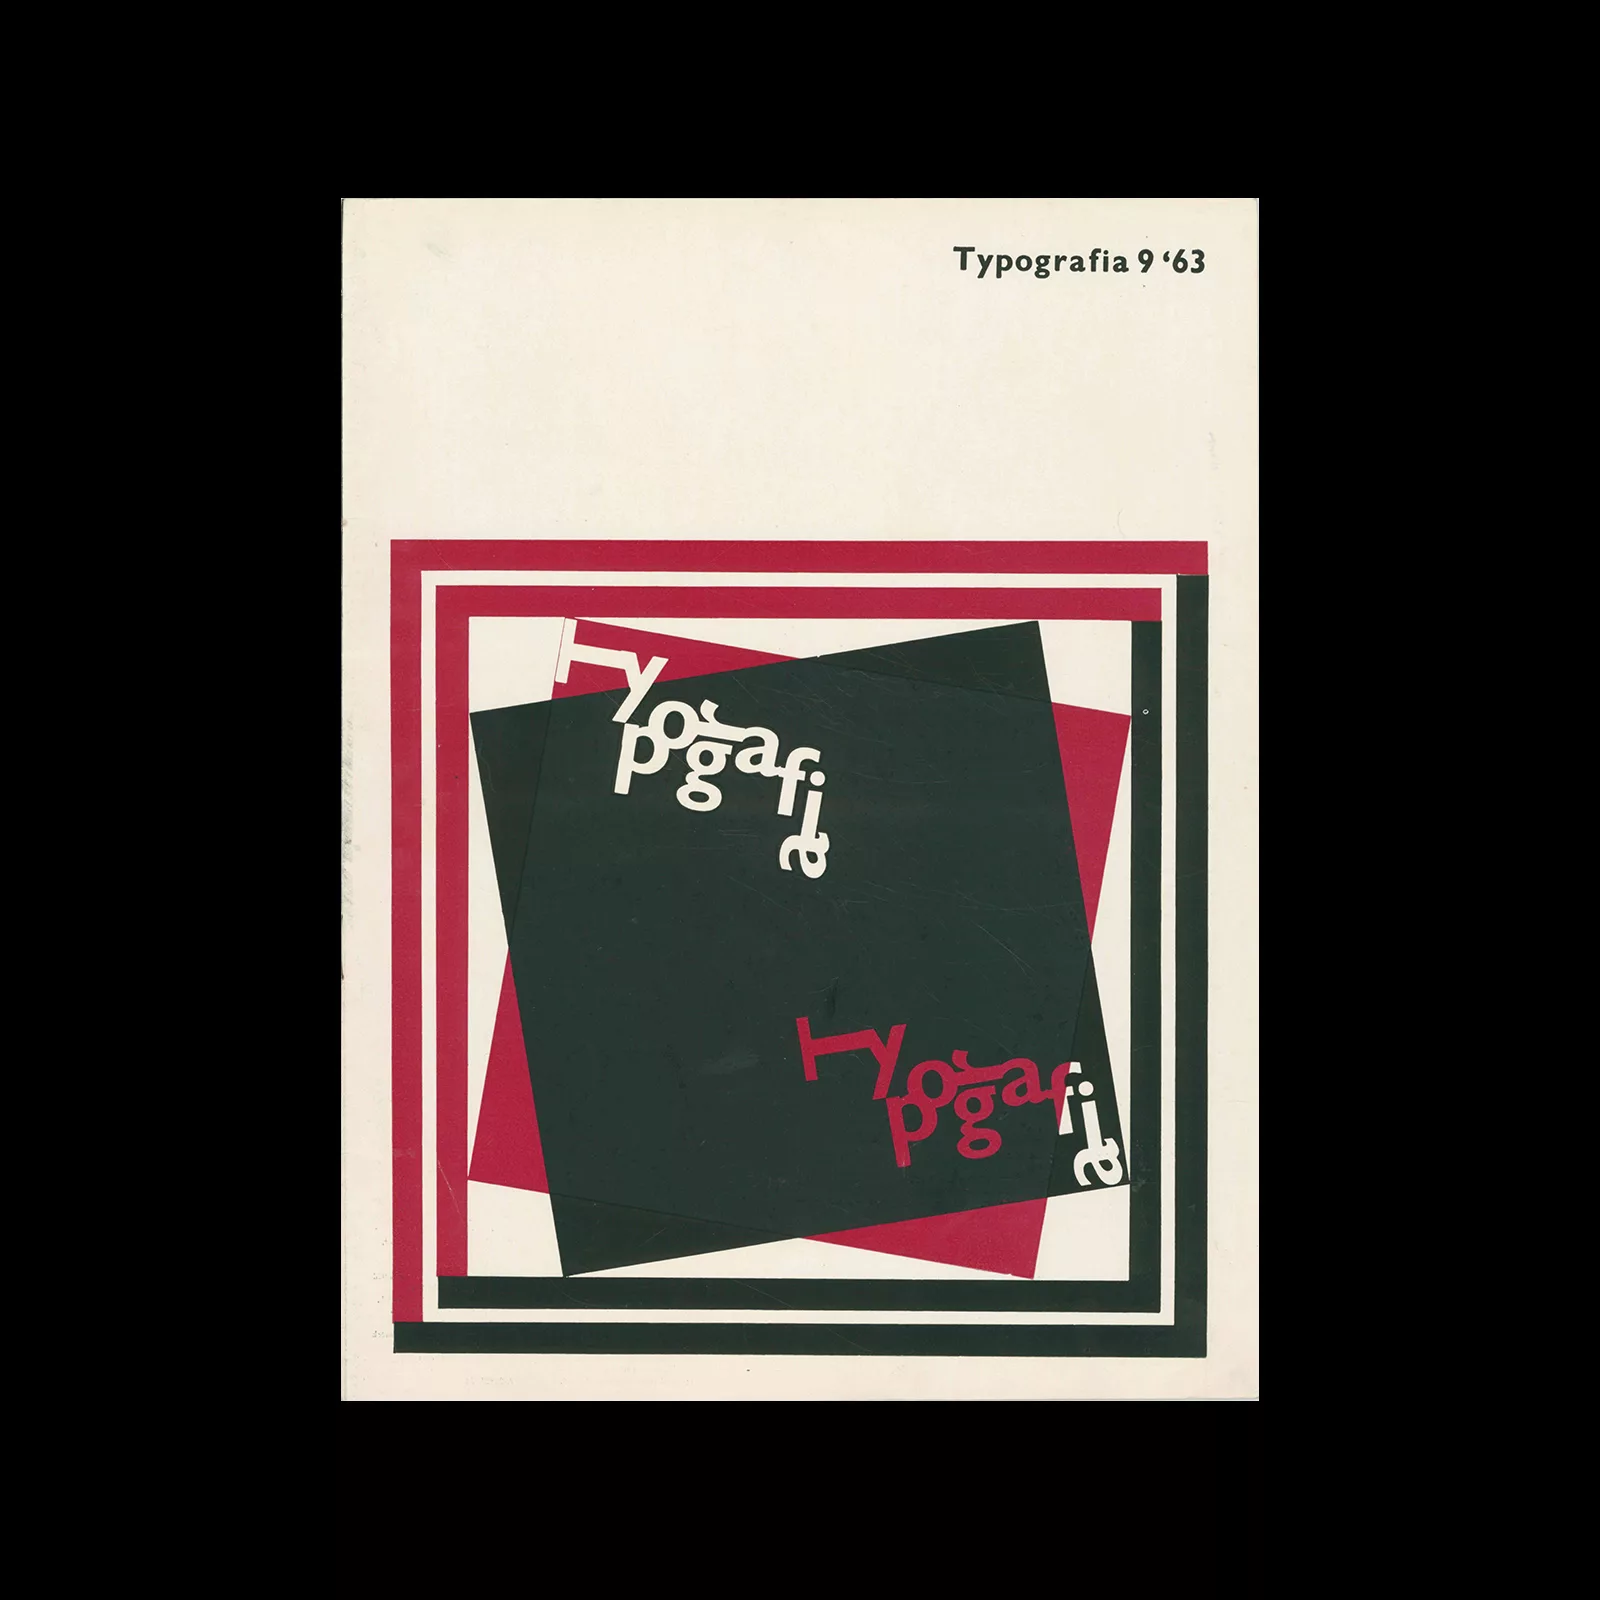 Typografia, ročník 66, 09, 1963. Cover design by Vladimír Janský